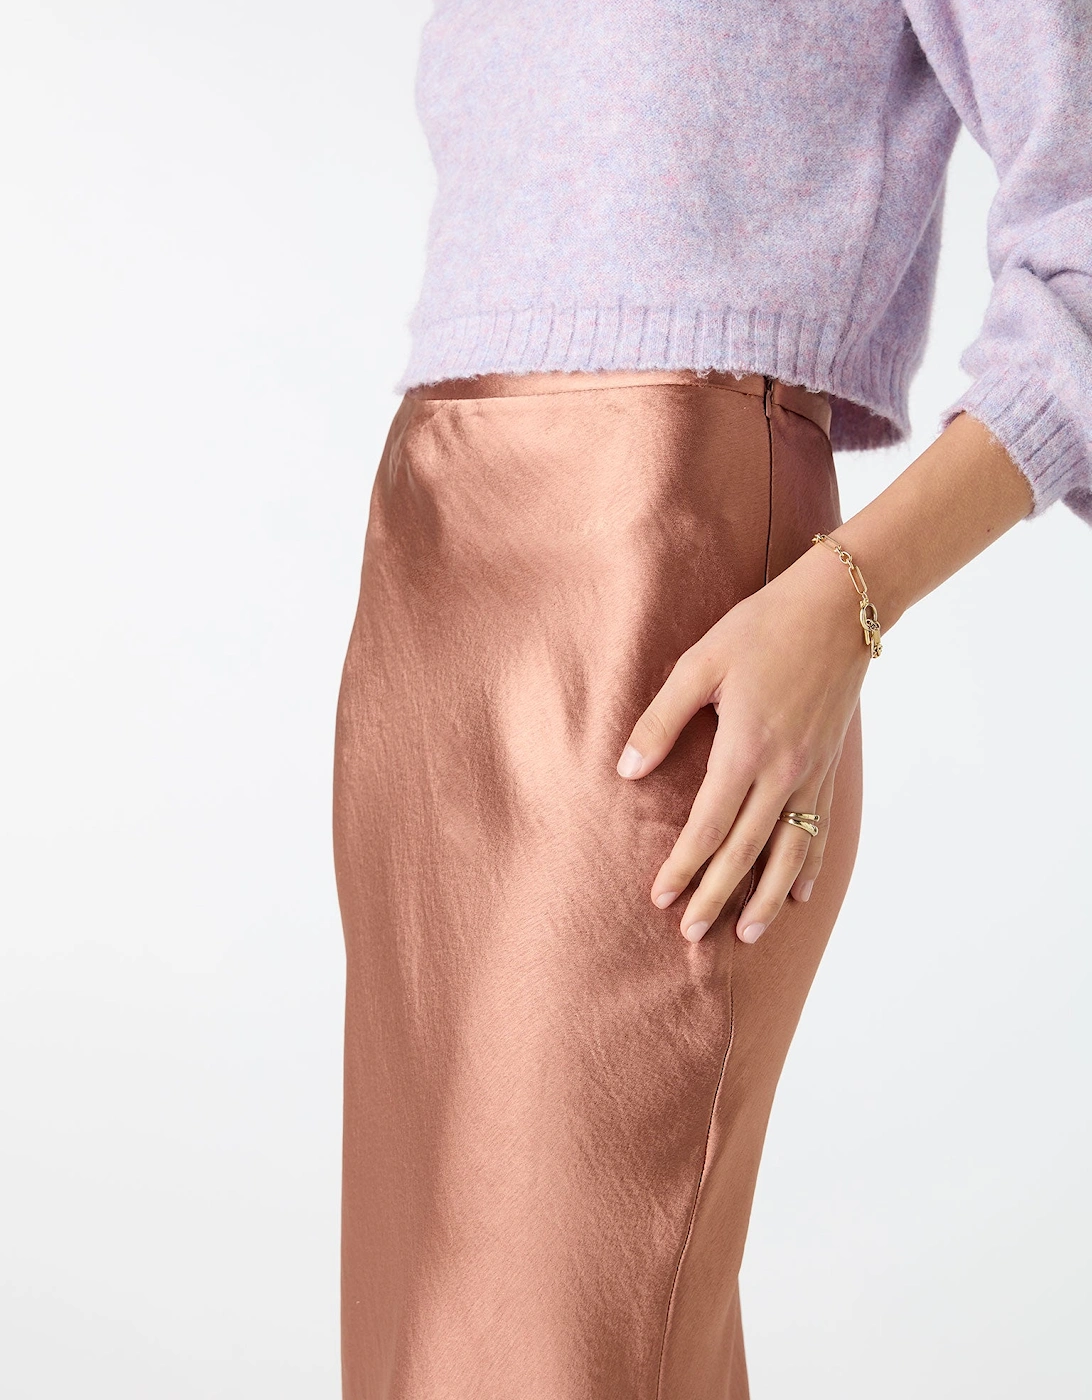 Saffron Skirt in Bronze